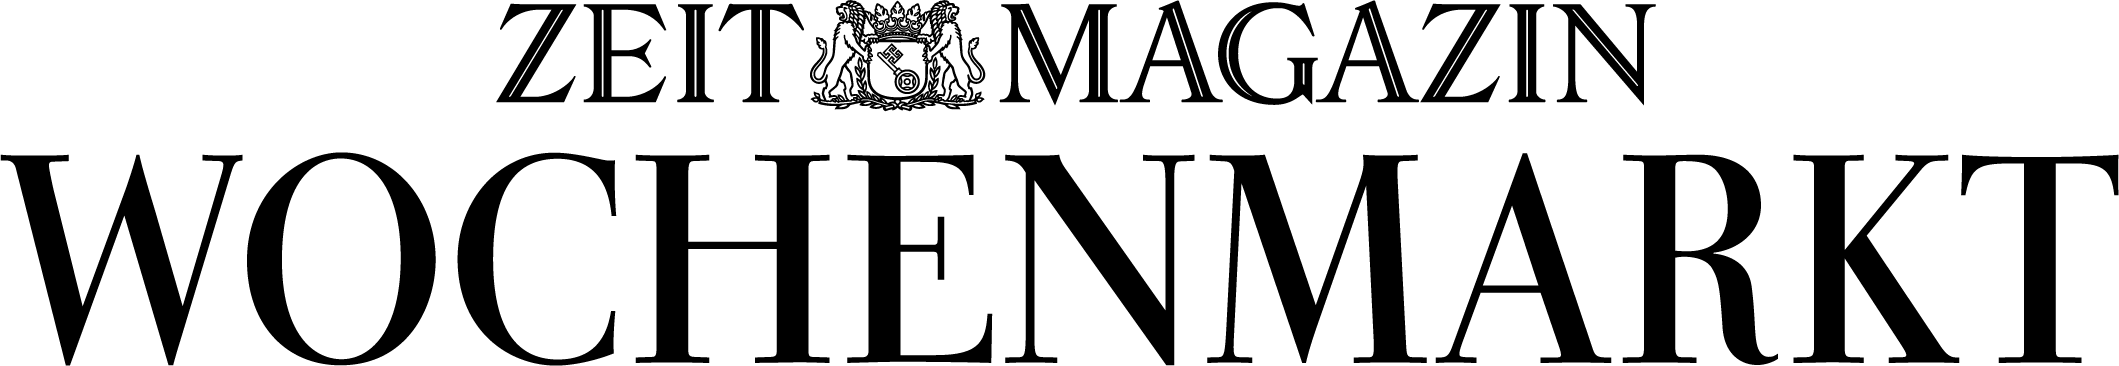 ZEITMAGAZIn Wichenmarkt Logo